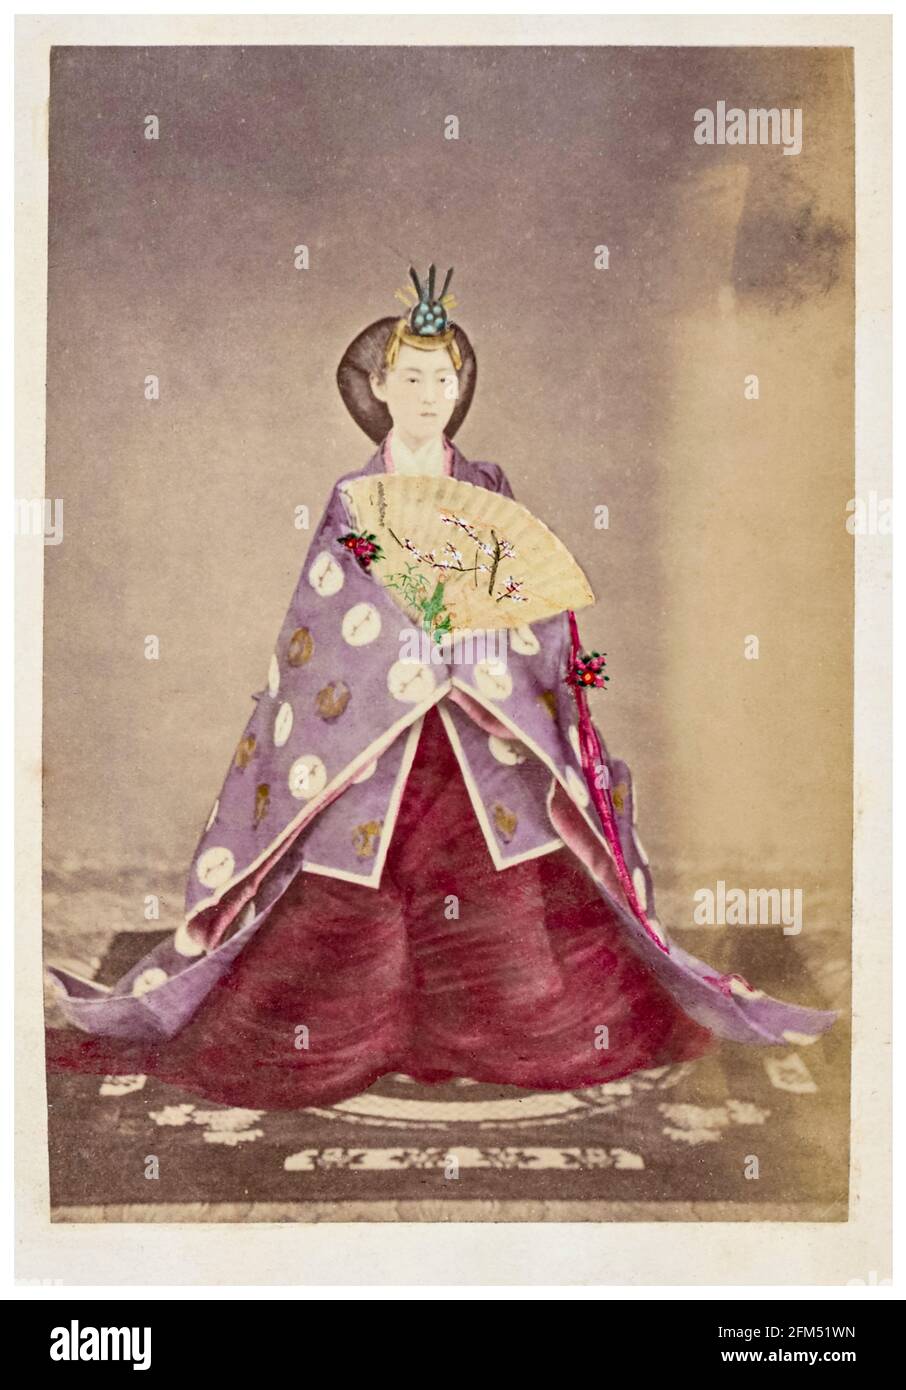 Imperatrice Shōken (1849-1914) (imperatrice Haruko), imperatrice Consort del Giappone (1869-1912) in abito tradizionale, fotografia ritratto di Felice Beato o Baron Raimund von Stillfried, 1869-1880 Foto Stock